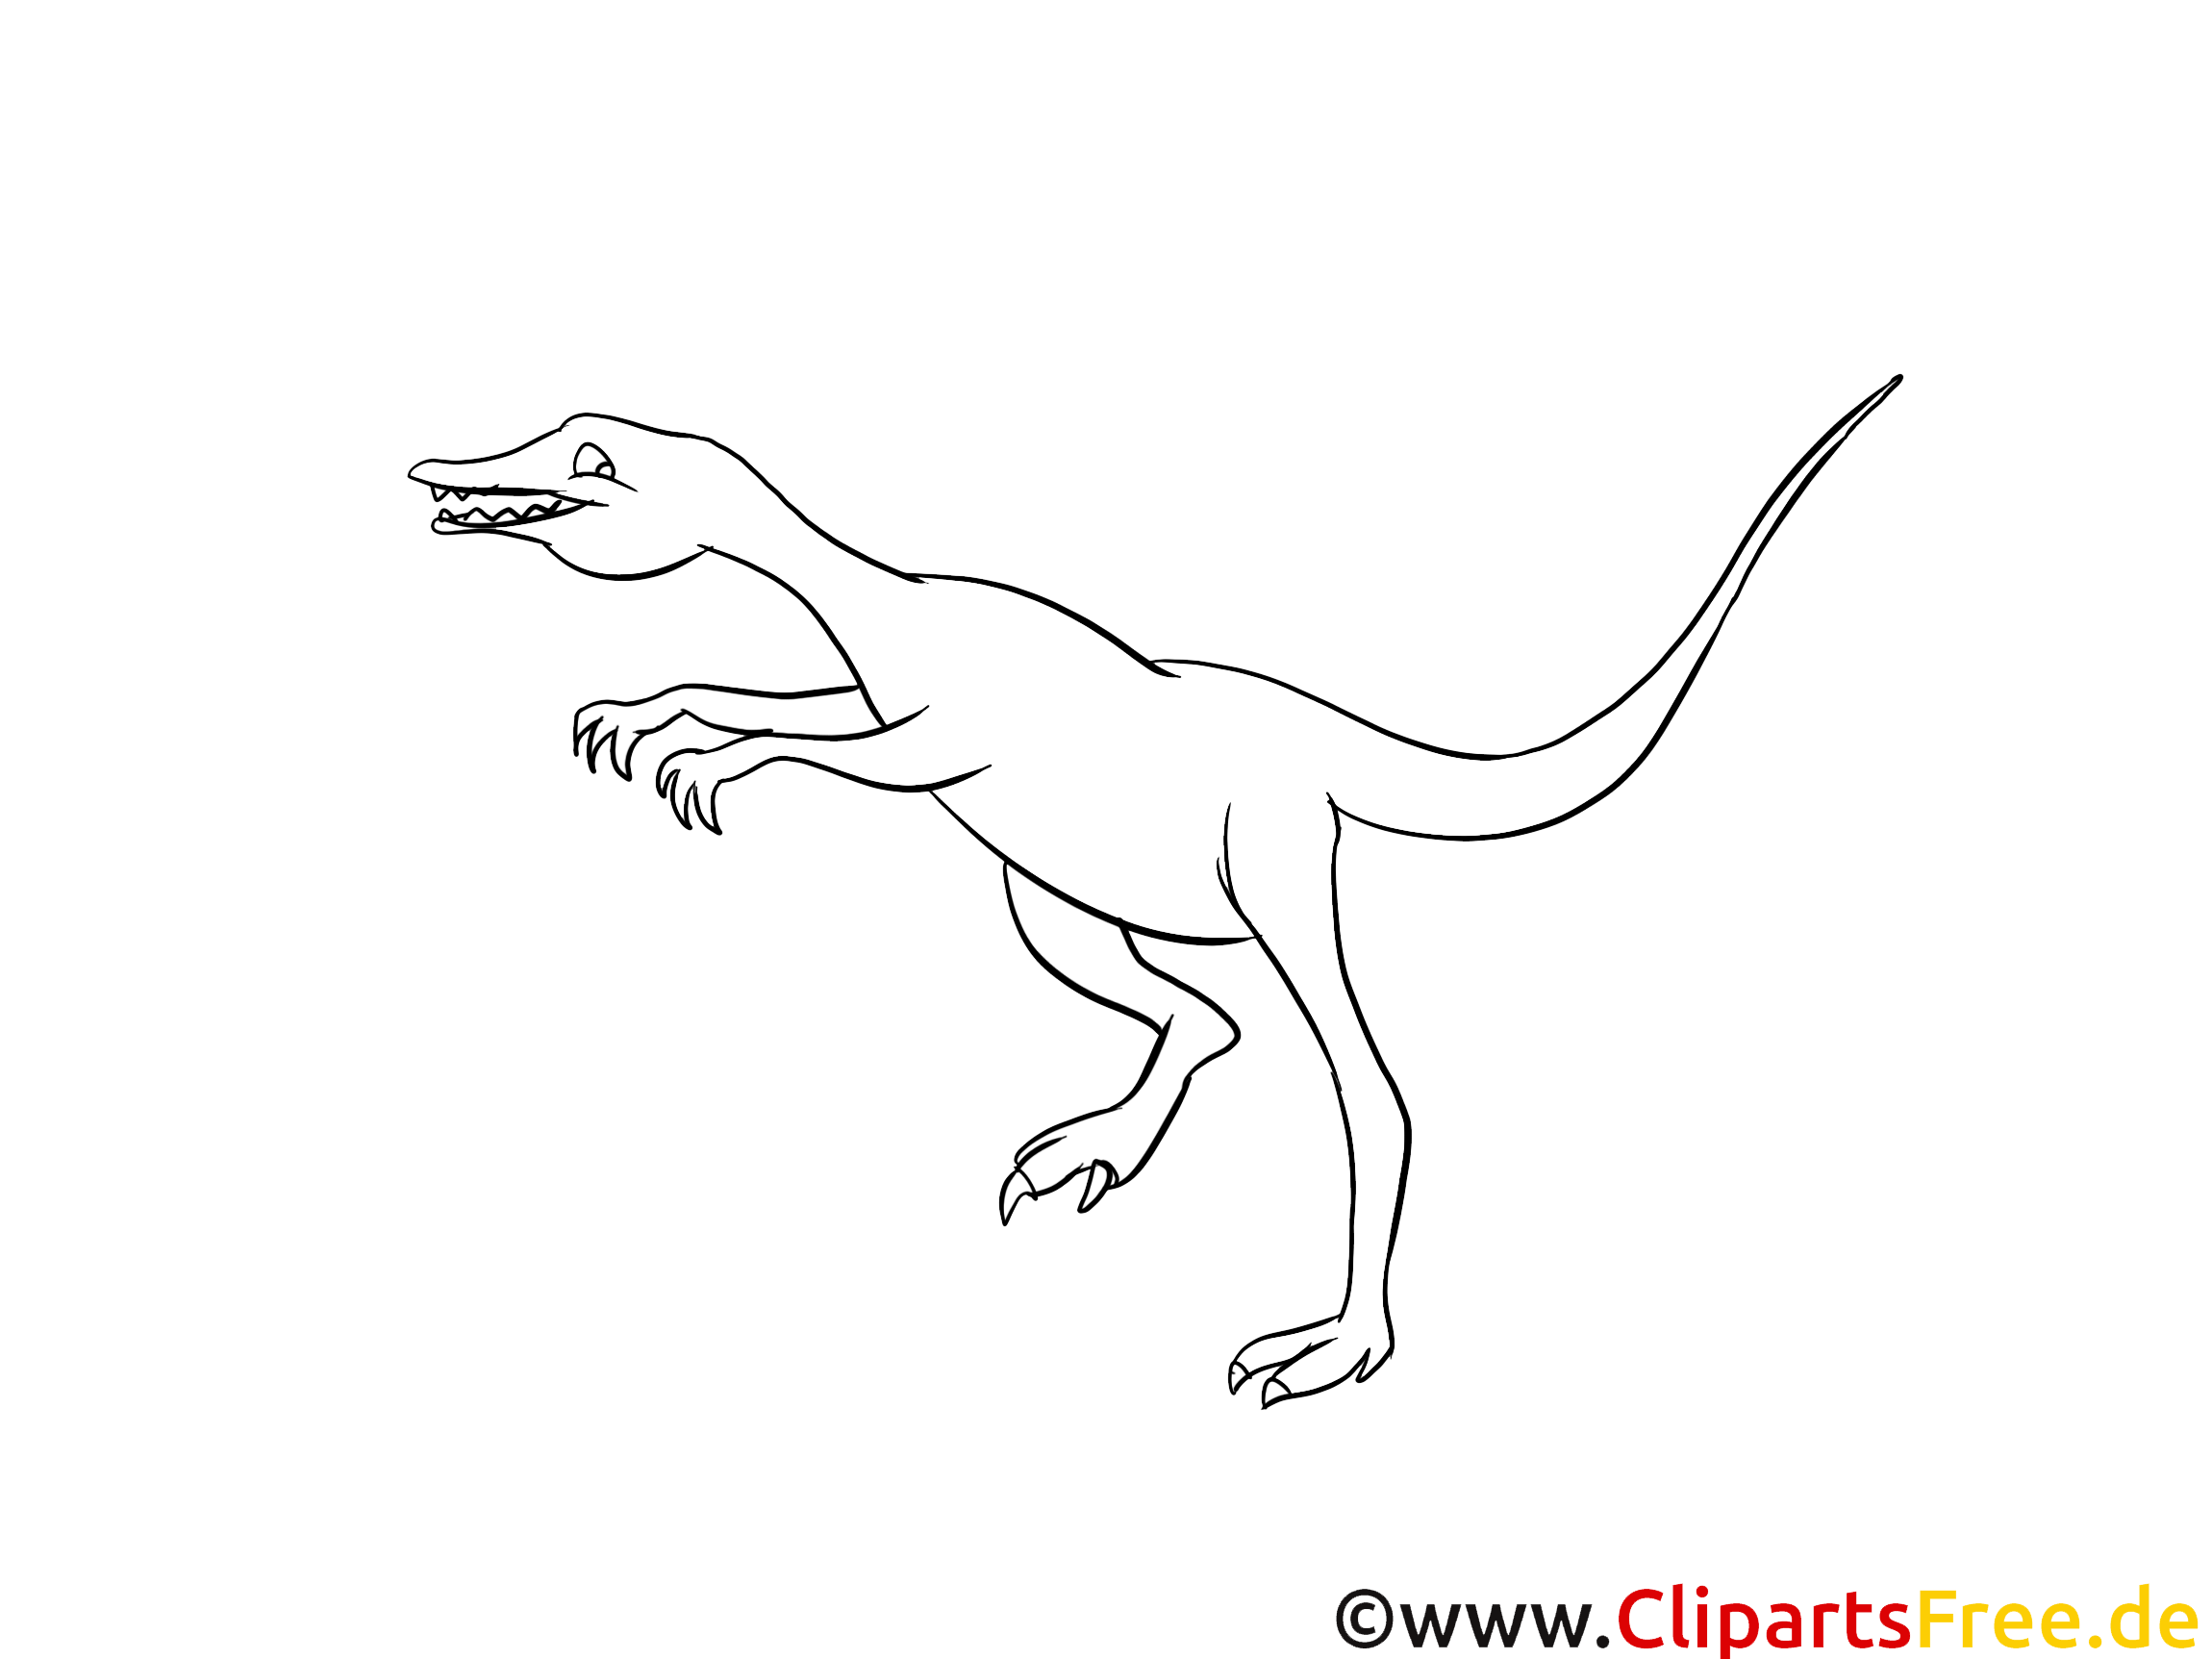 Clip art gratuit dinosaures à colorier